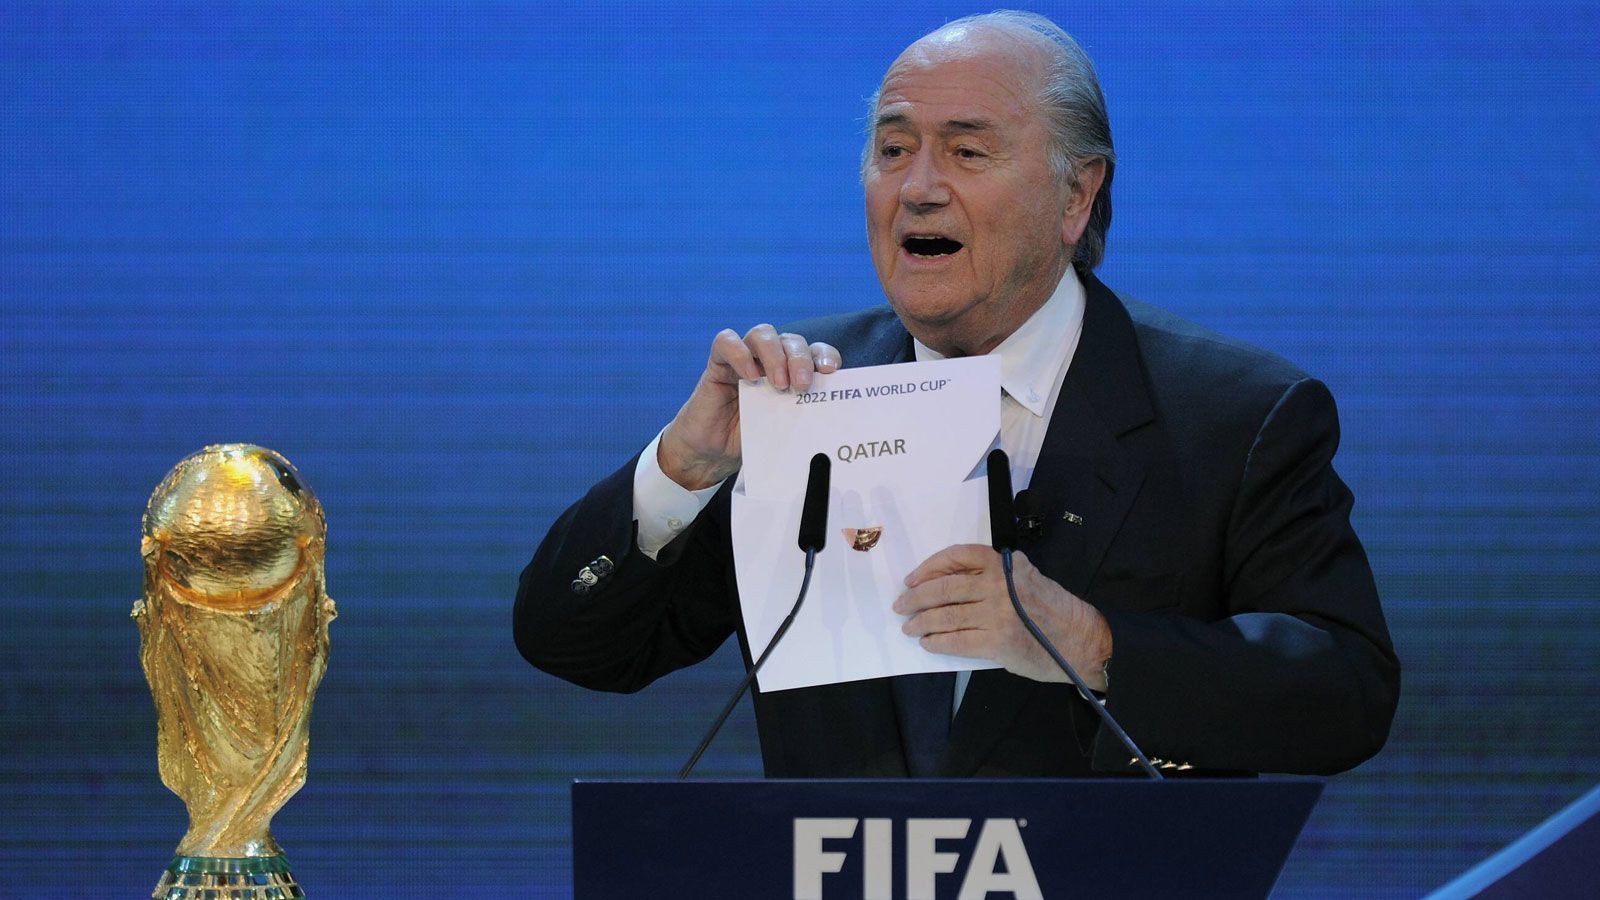 
                <strong>2. Dezember 2010</strong><br>
                FIFA-Präsident Joseph S. Blatter verkündet in Zürich die Vergabe der Weltmeisterschaft 2022 an Katar. Der Wüstenstaat gewinnt die Wahl in der vierten Runde mit 14:8 Stimmen gegen die USA. Weitere Bewerber waren Südkorea, Japan und Australien. Als einer der Ersten reagiert US-Präsident Barack Obama. "Das ist eine schlechte Entscheidung", sagt er. Die WM 2018 wird am selben Tag an Russland vergeben.
              